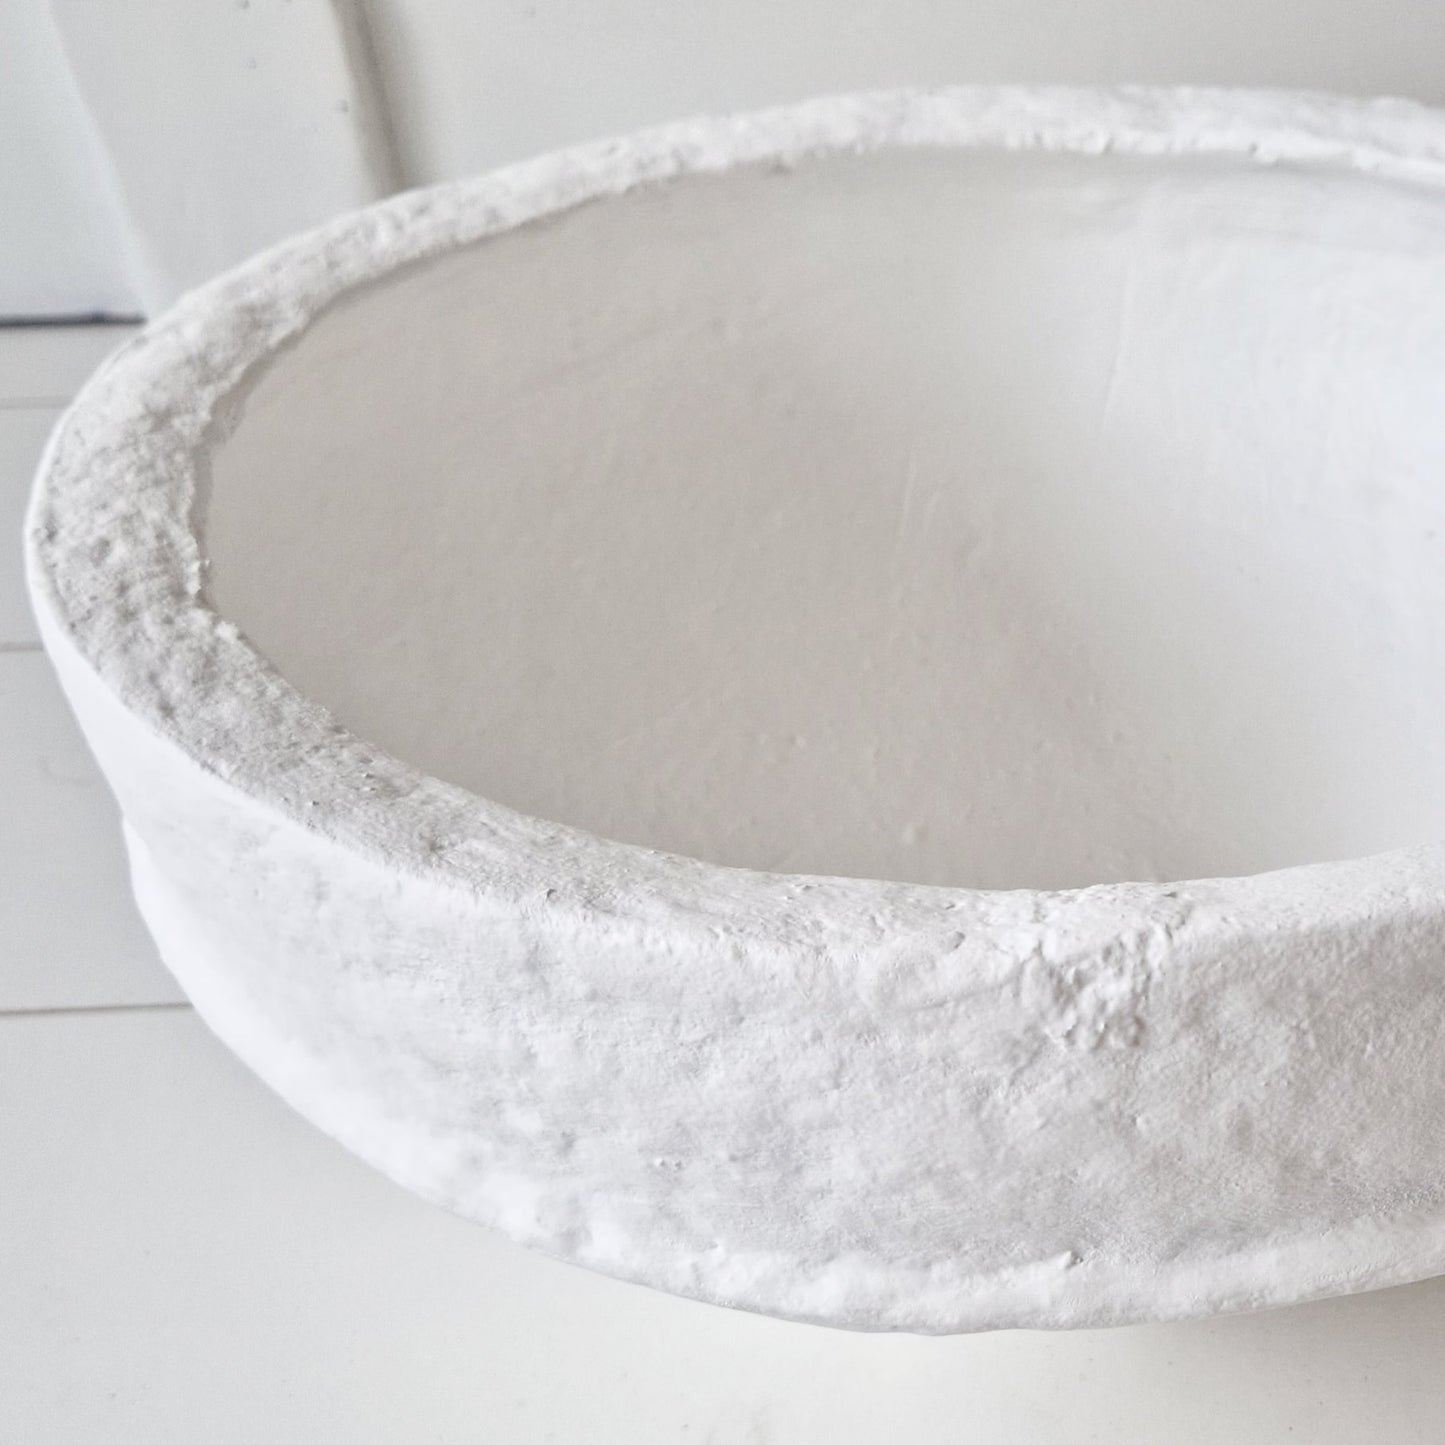 Papier-mâché bowl White Ø39cm